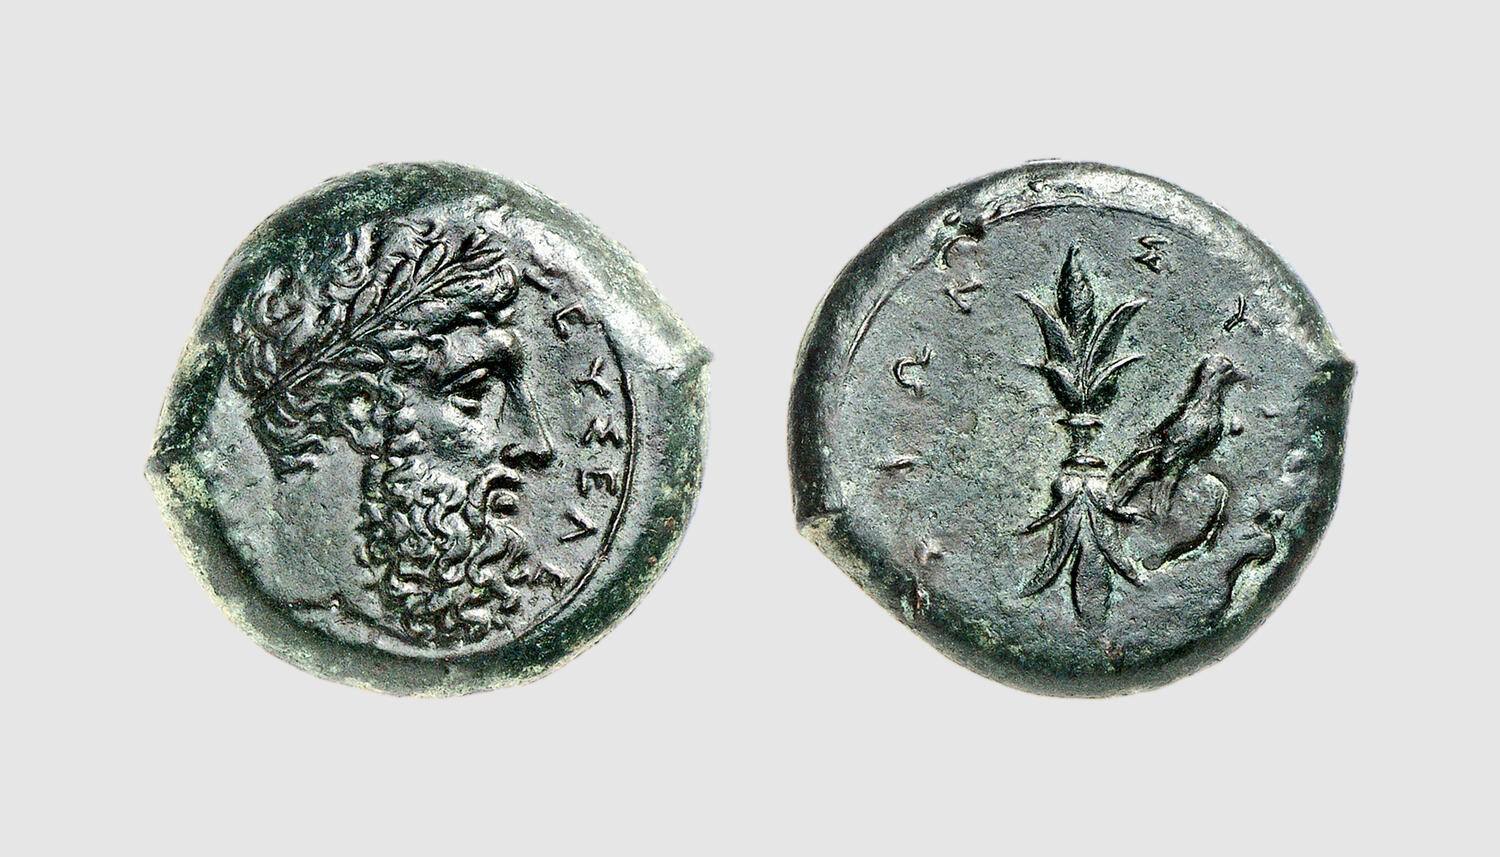 Monedhë e lashtë shkruar në shqip: ΖΕΥΣΕΛ; ZEYS/EL = ZEUSI YLL -Nga Aleksandër Hasanaj